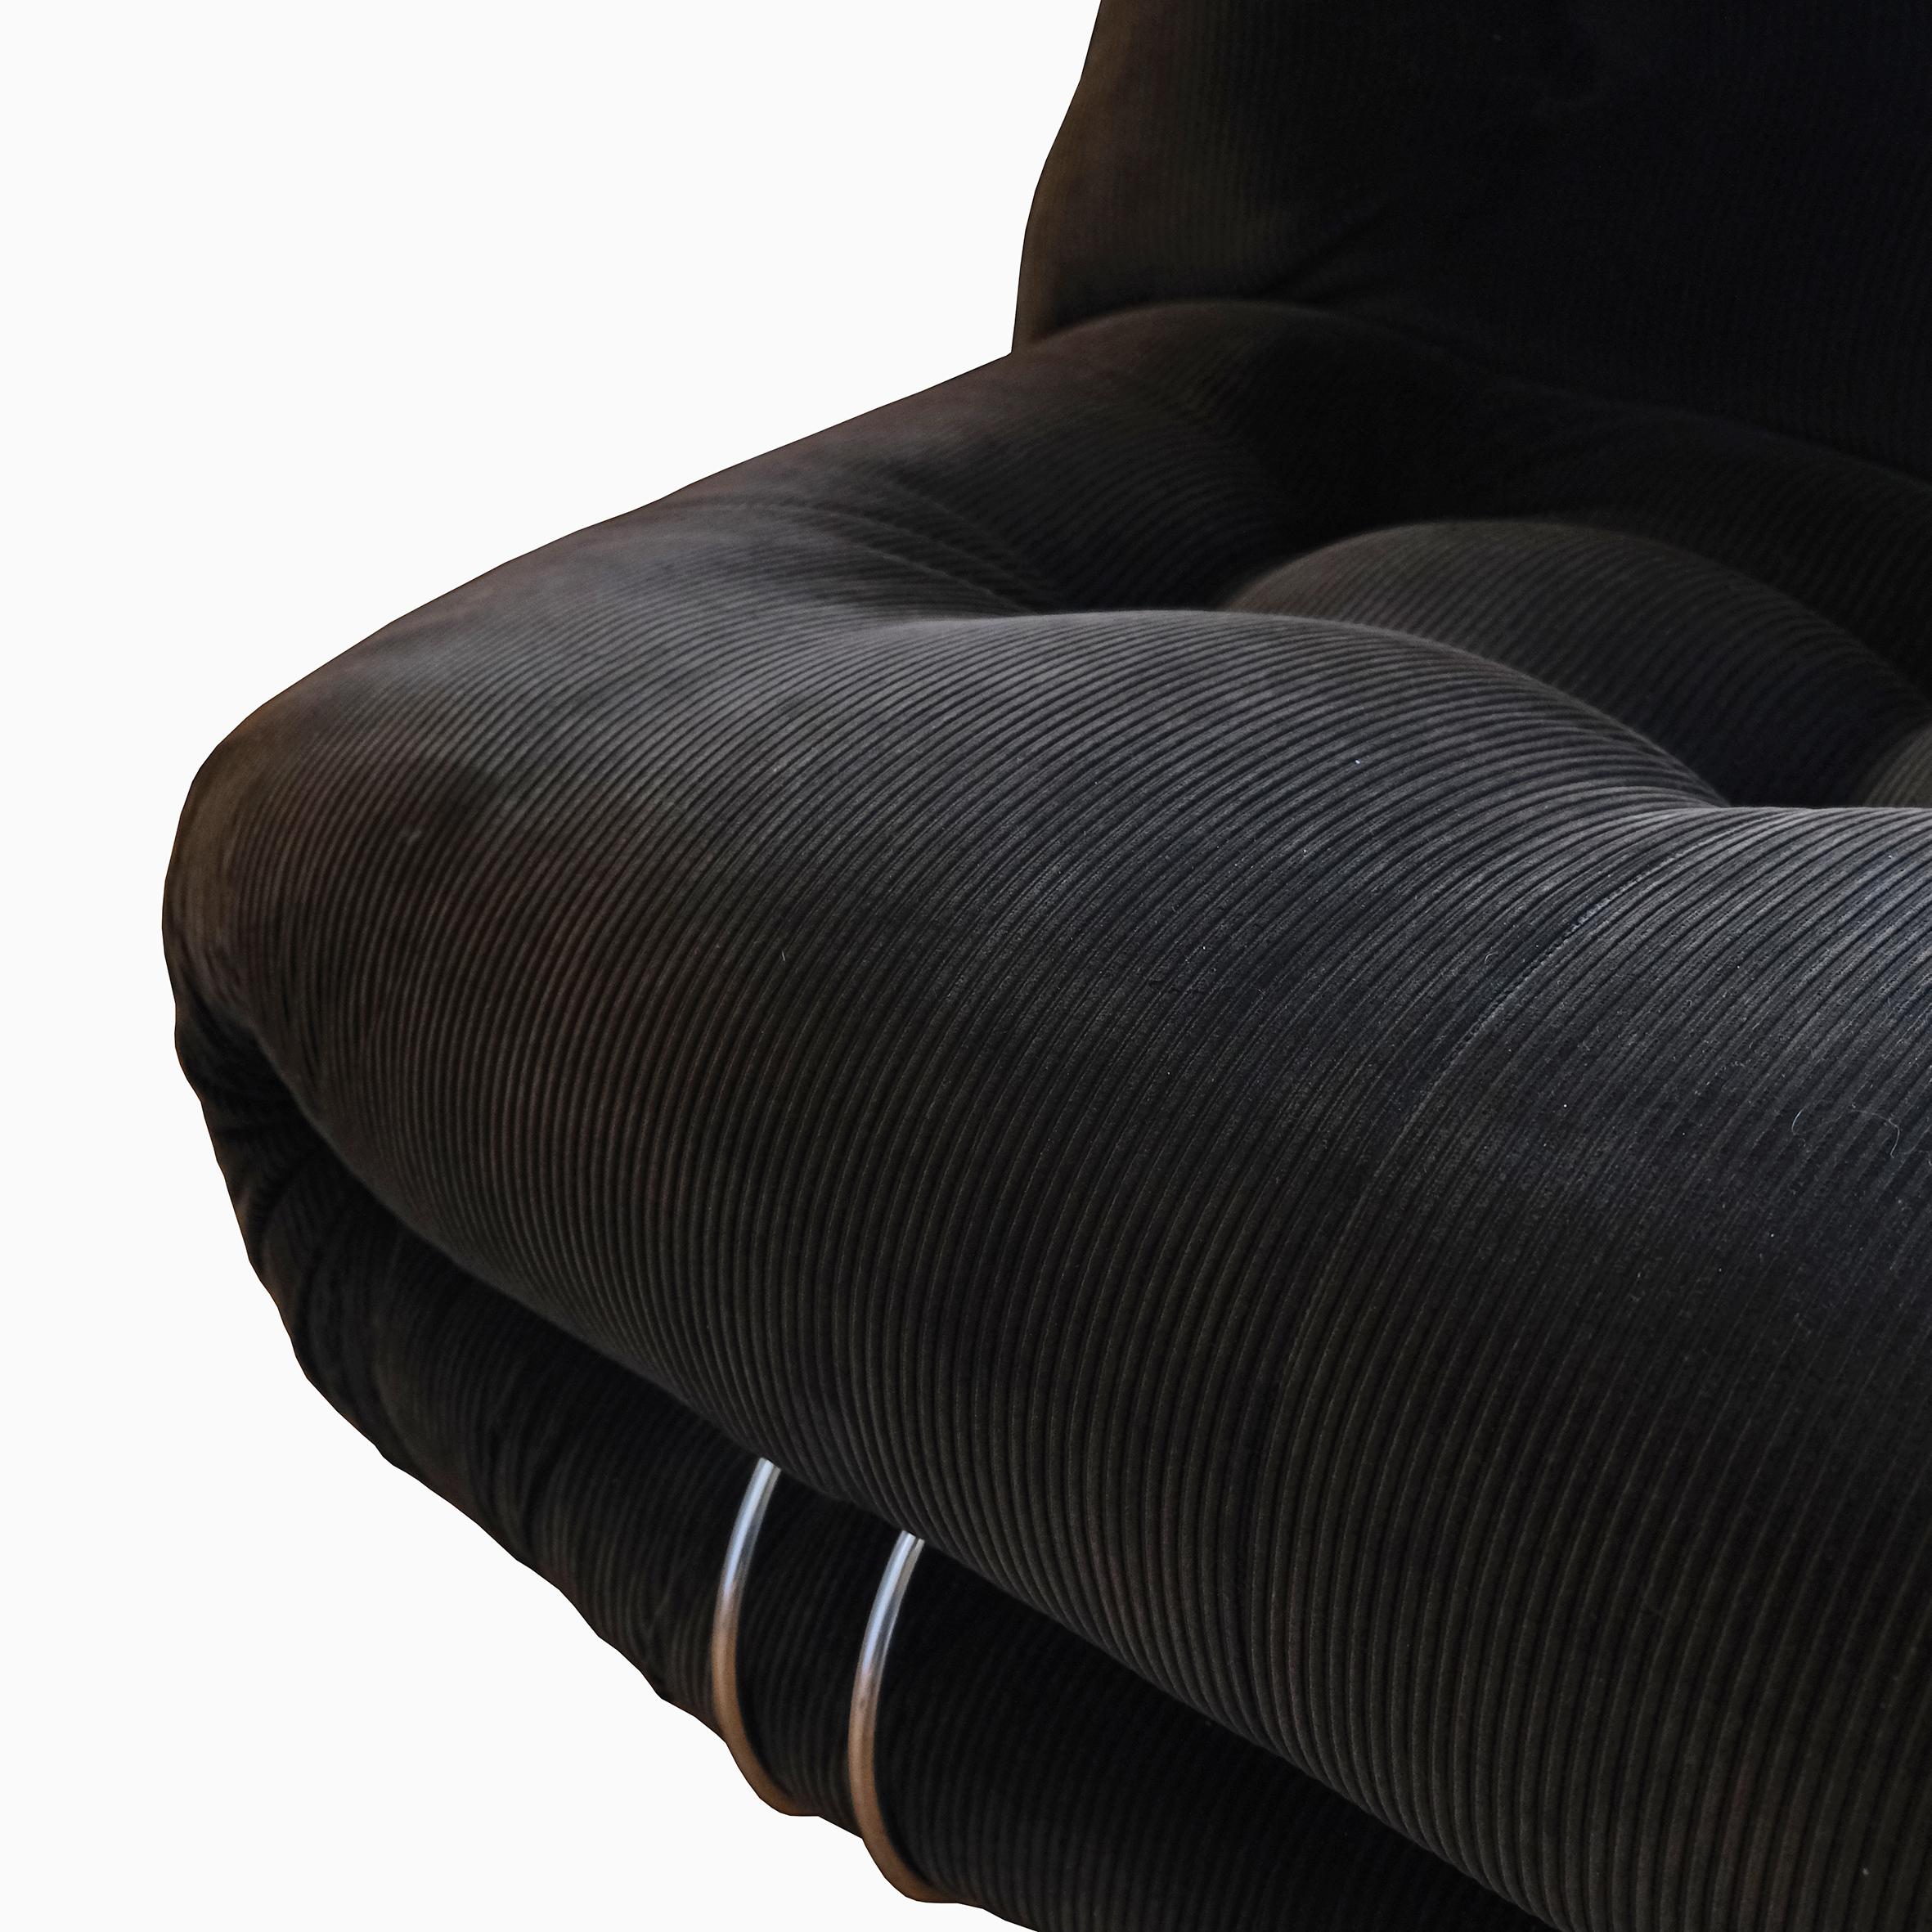 Afra & Tobia Scarpa, A large sofa, 